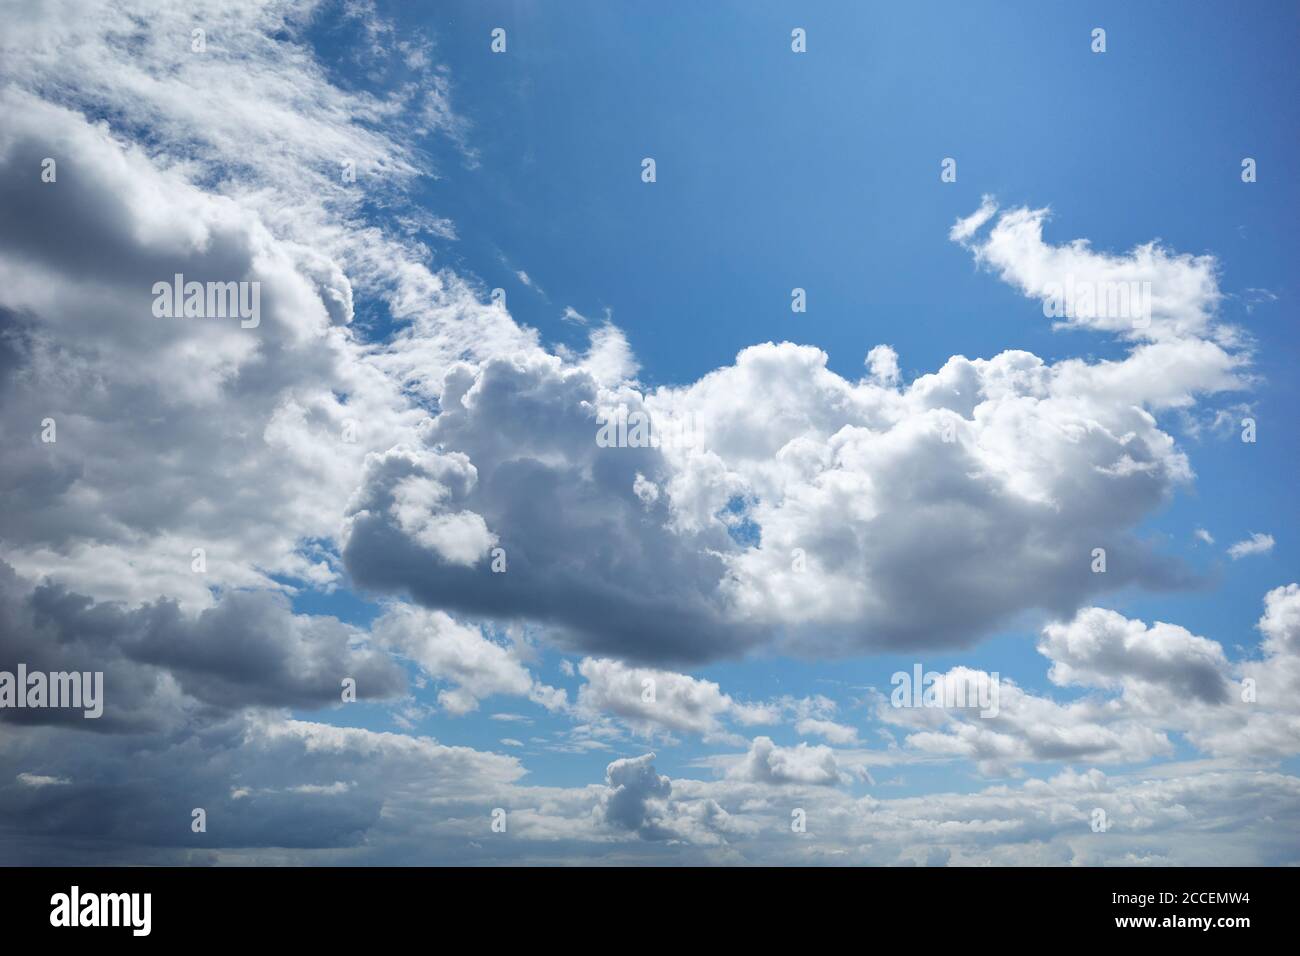 Strahlendes Blau des Himmels mit schönen, von der Sonne beleuchteten Cumuluswolken. Hintergrund für Vorhersage und Meteorologie Illustration Stockfoto